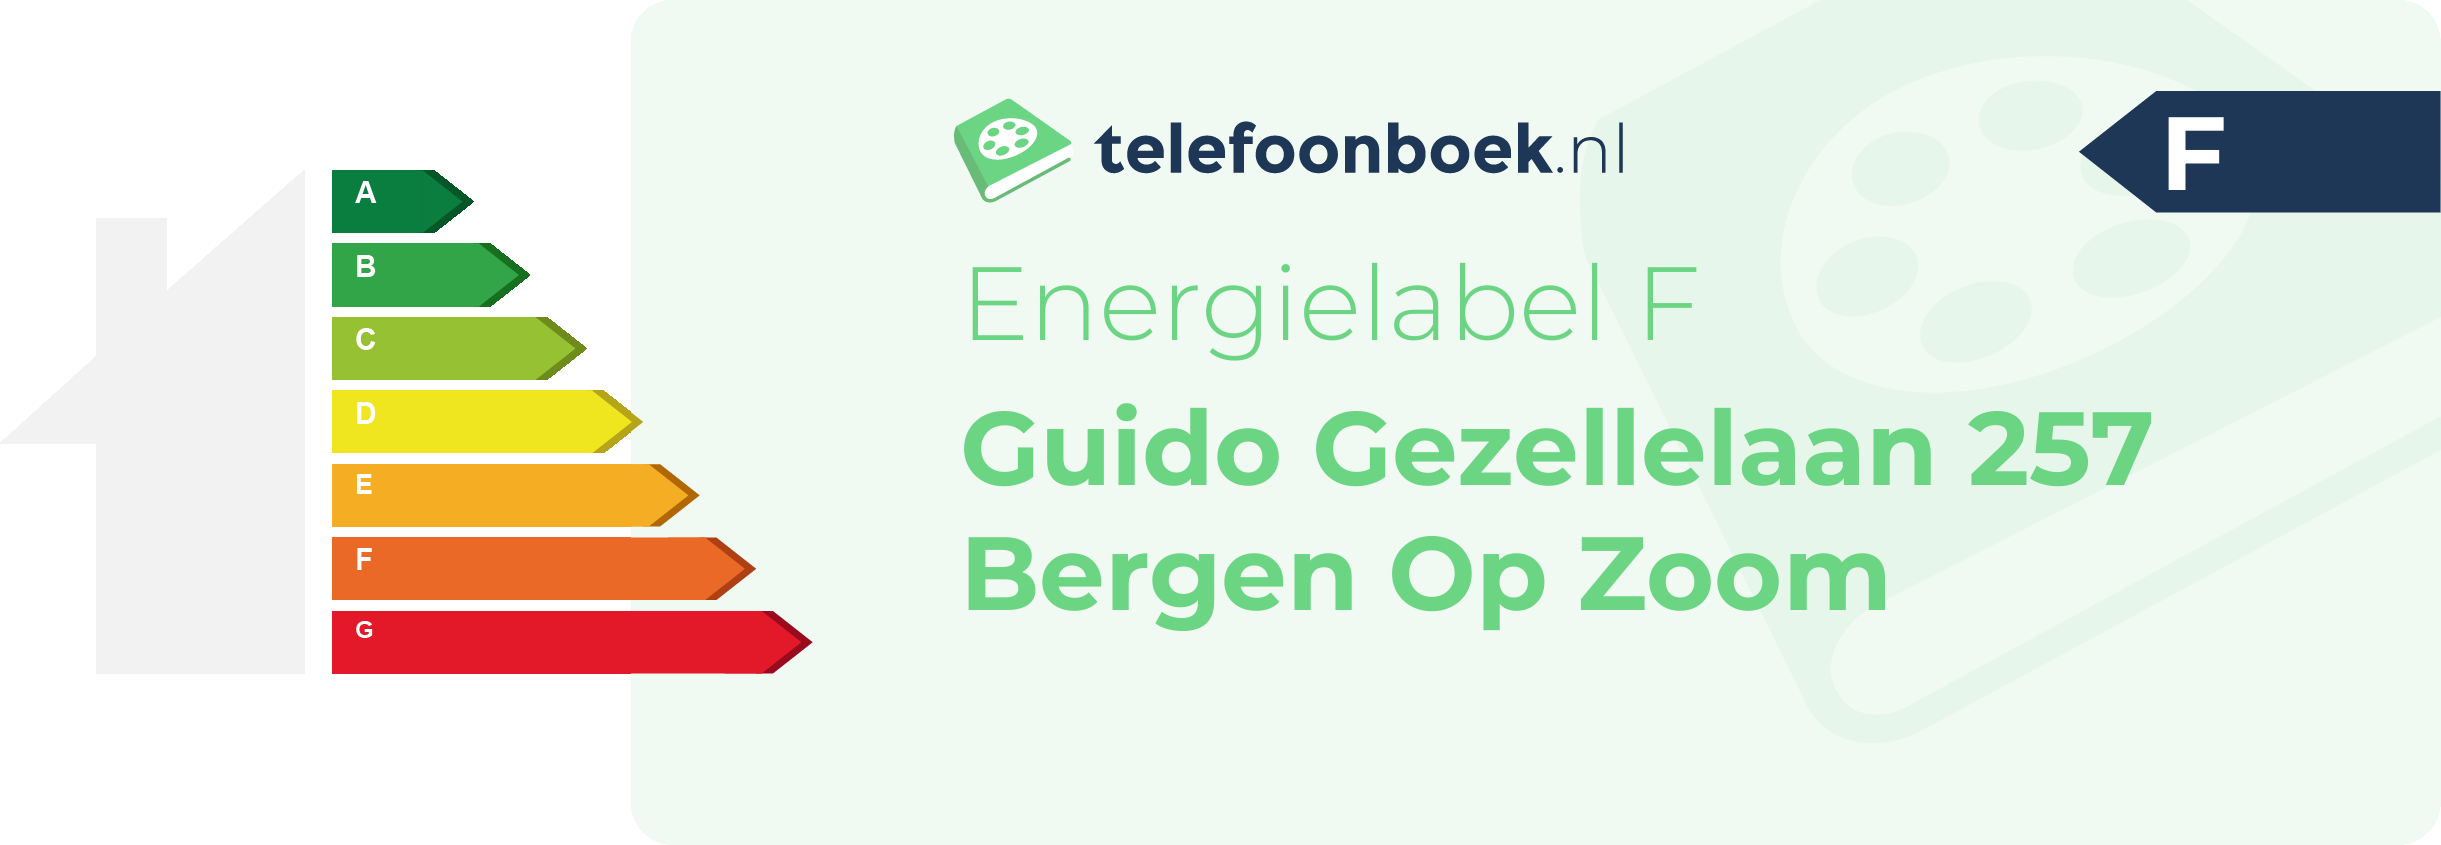 Energielabel Guido Gezellelaan 257 Bergen Op Zoom